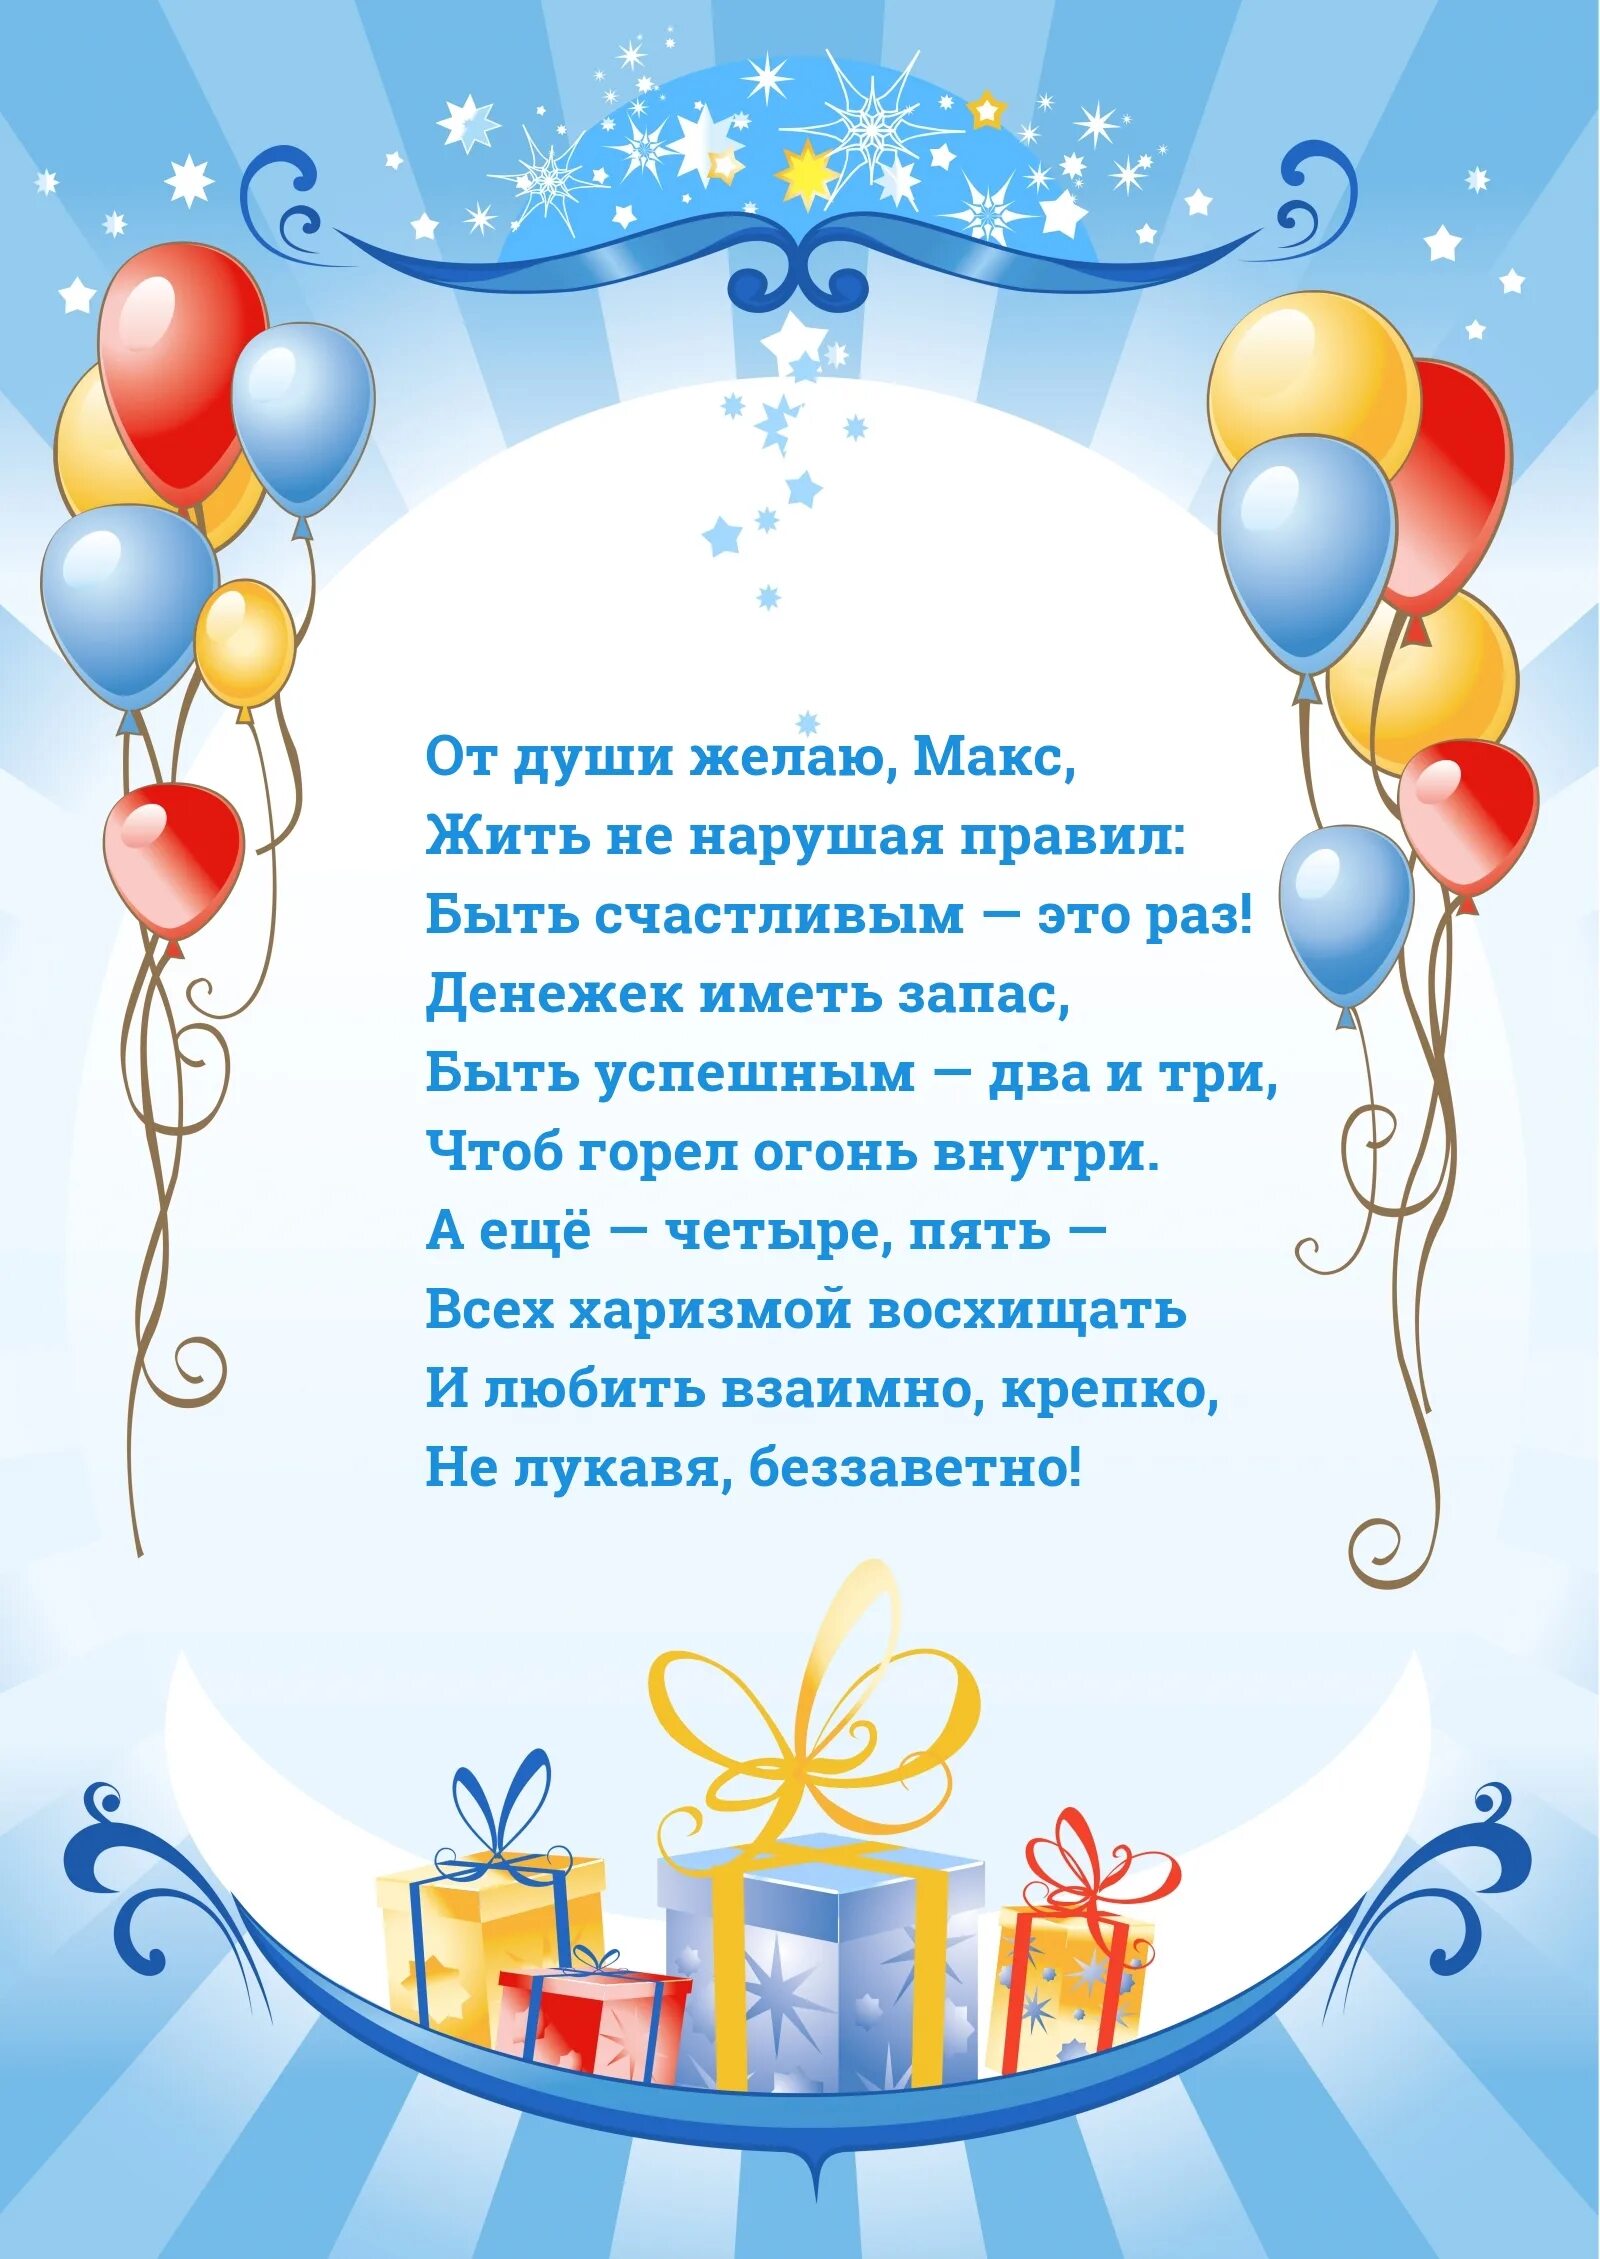 Поздравления на украинском языке. Привітання з днем народження. Поздравления с днём рождения на украинском языке. Поздравления с днём рождения мужчине на украинском языке. Поздравление с днем народження на украинском.